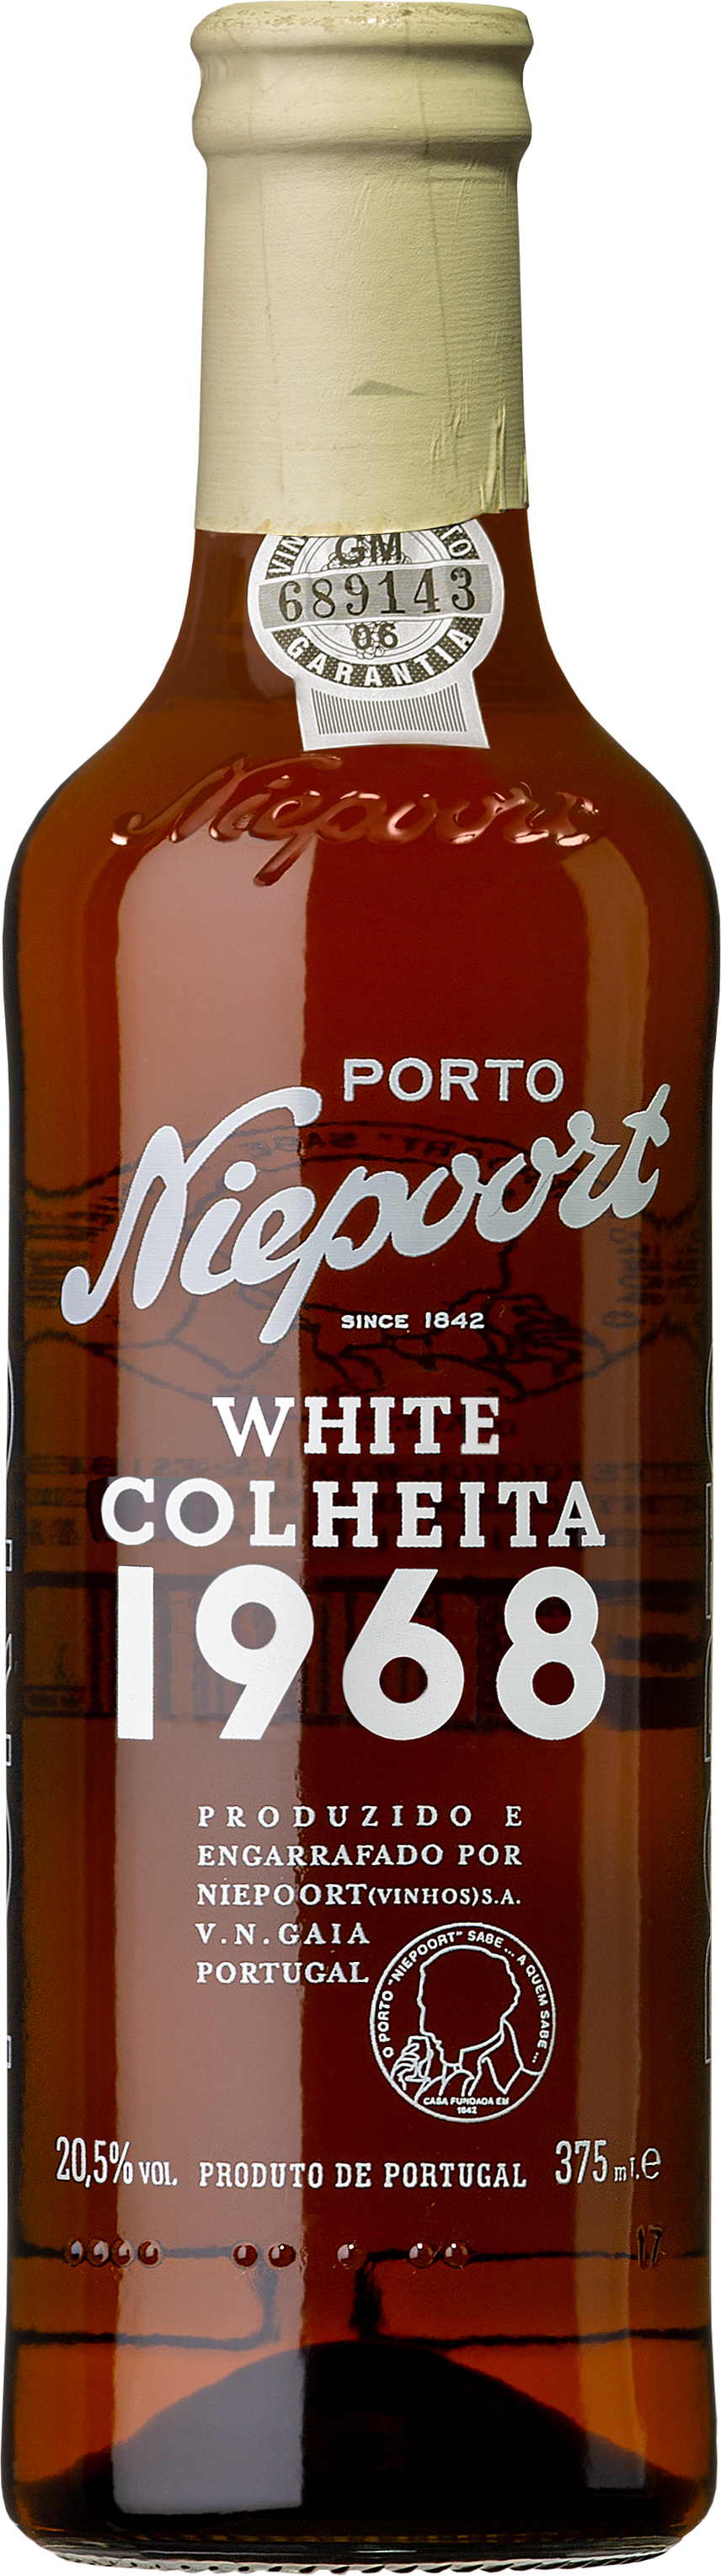 Colheita White 1968